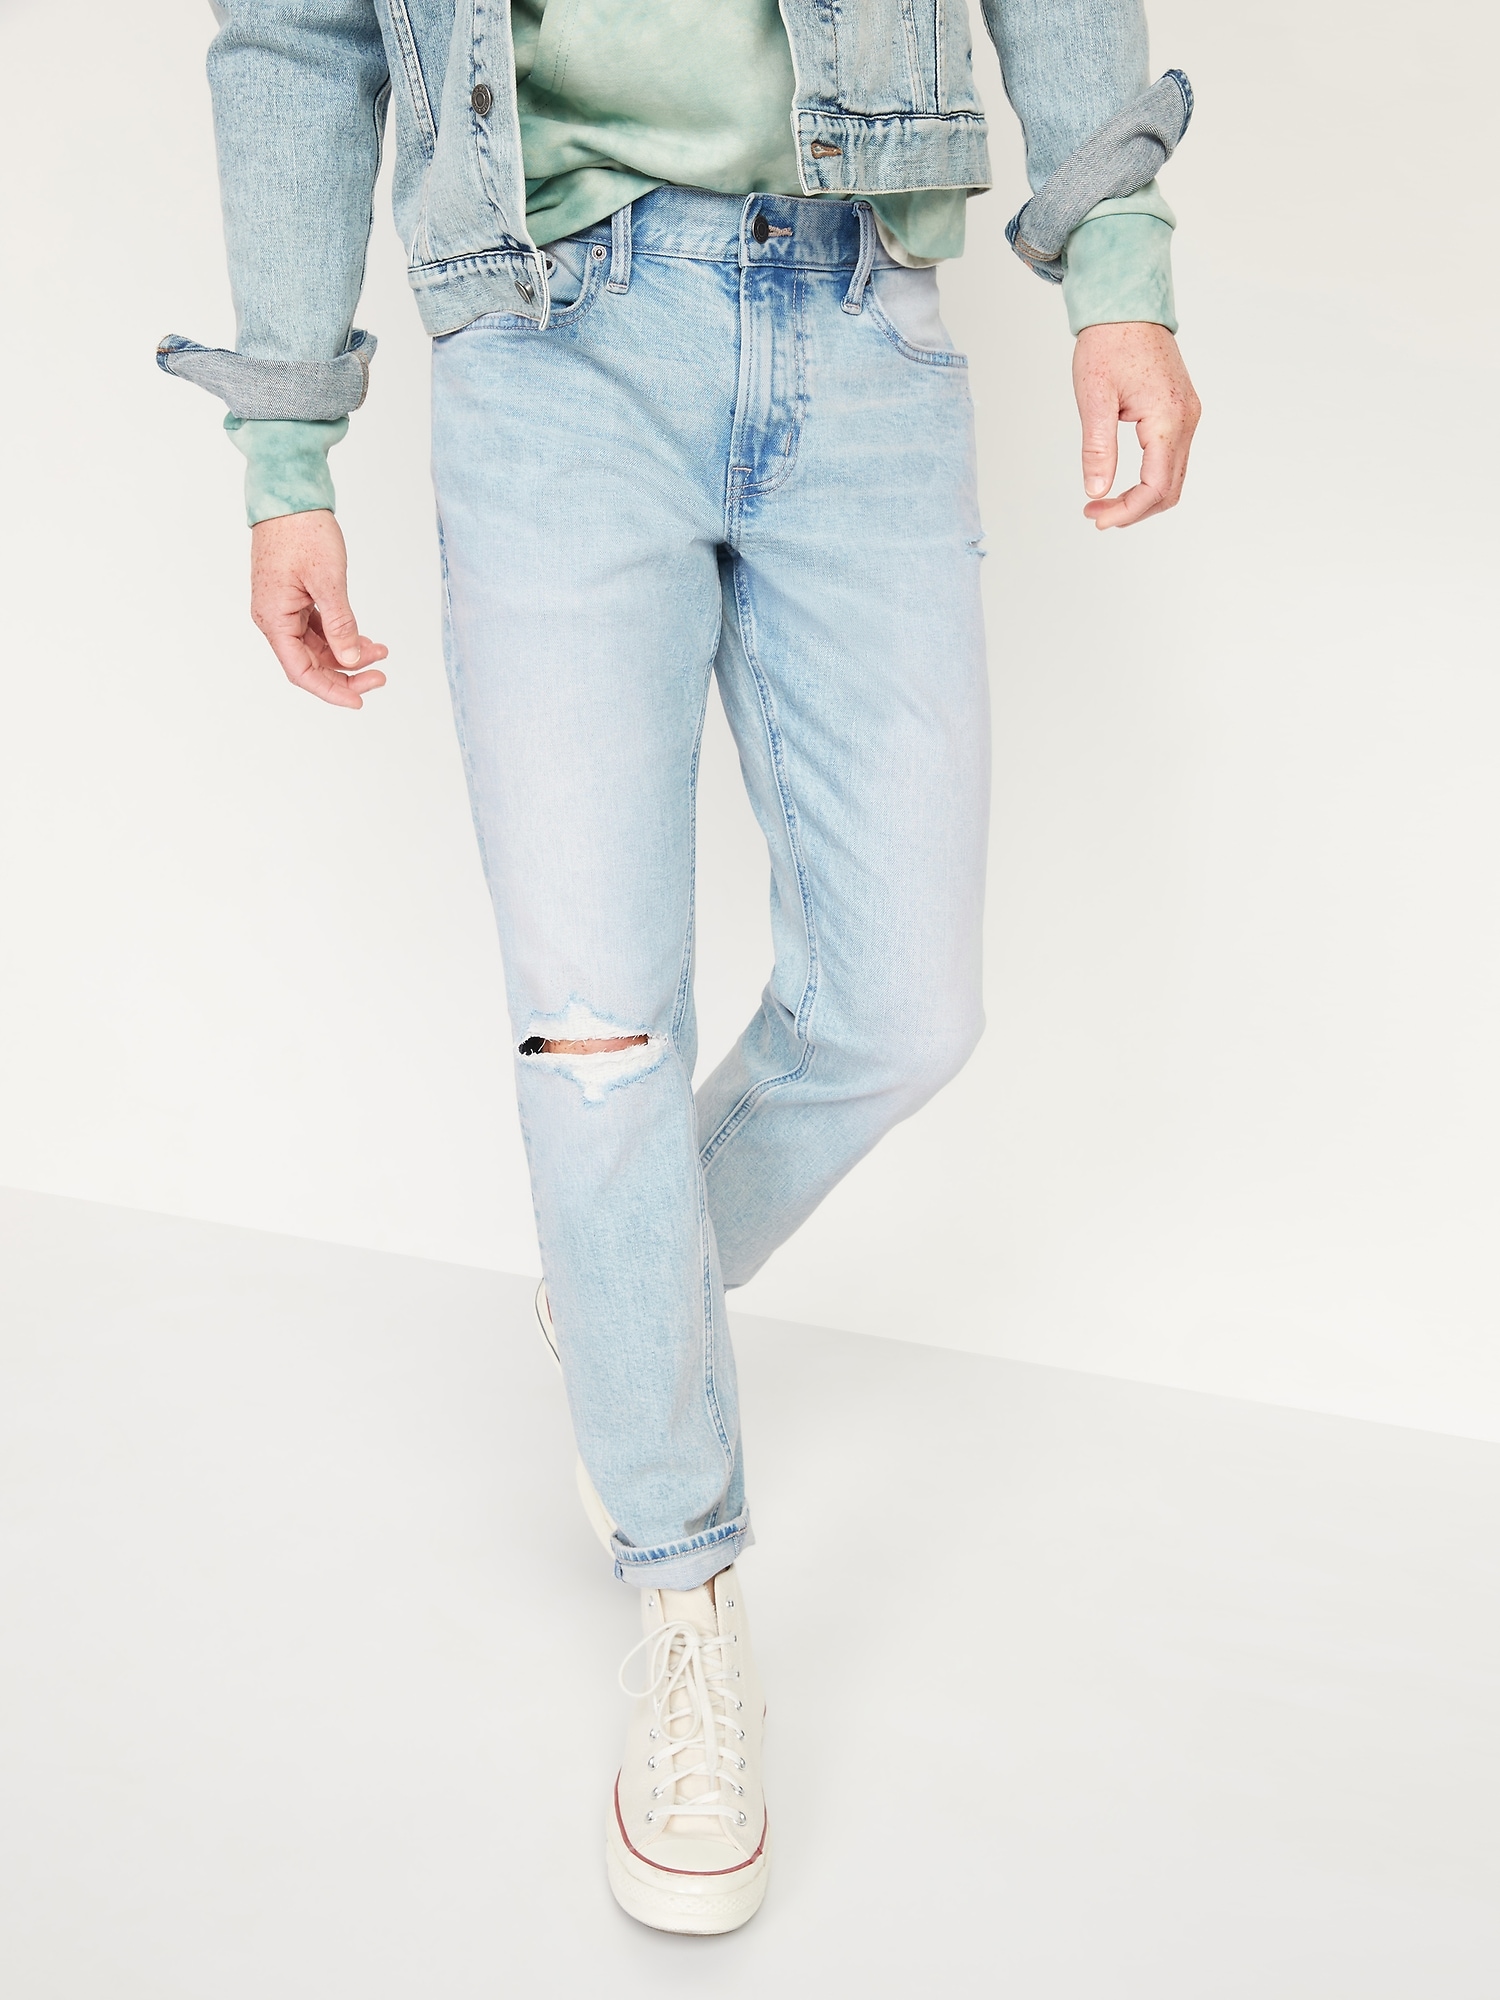 Relaxed Slim Taper Built-In Flex Light Ripped Jeans for Men